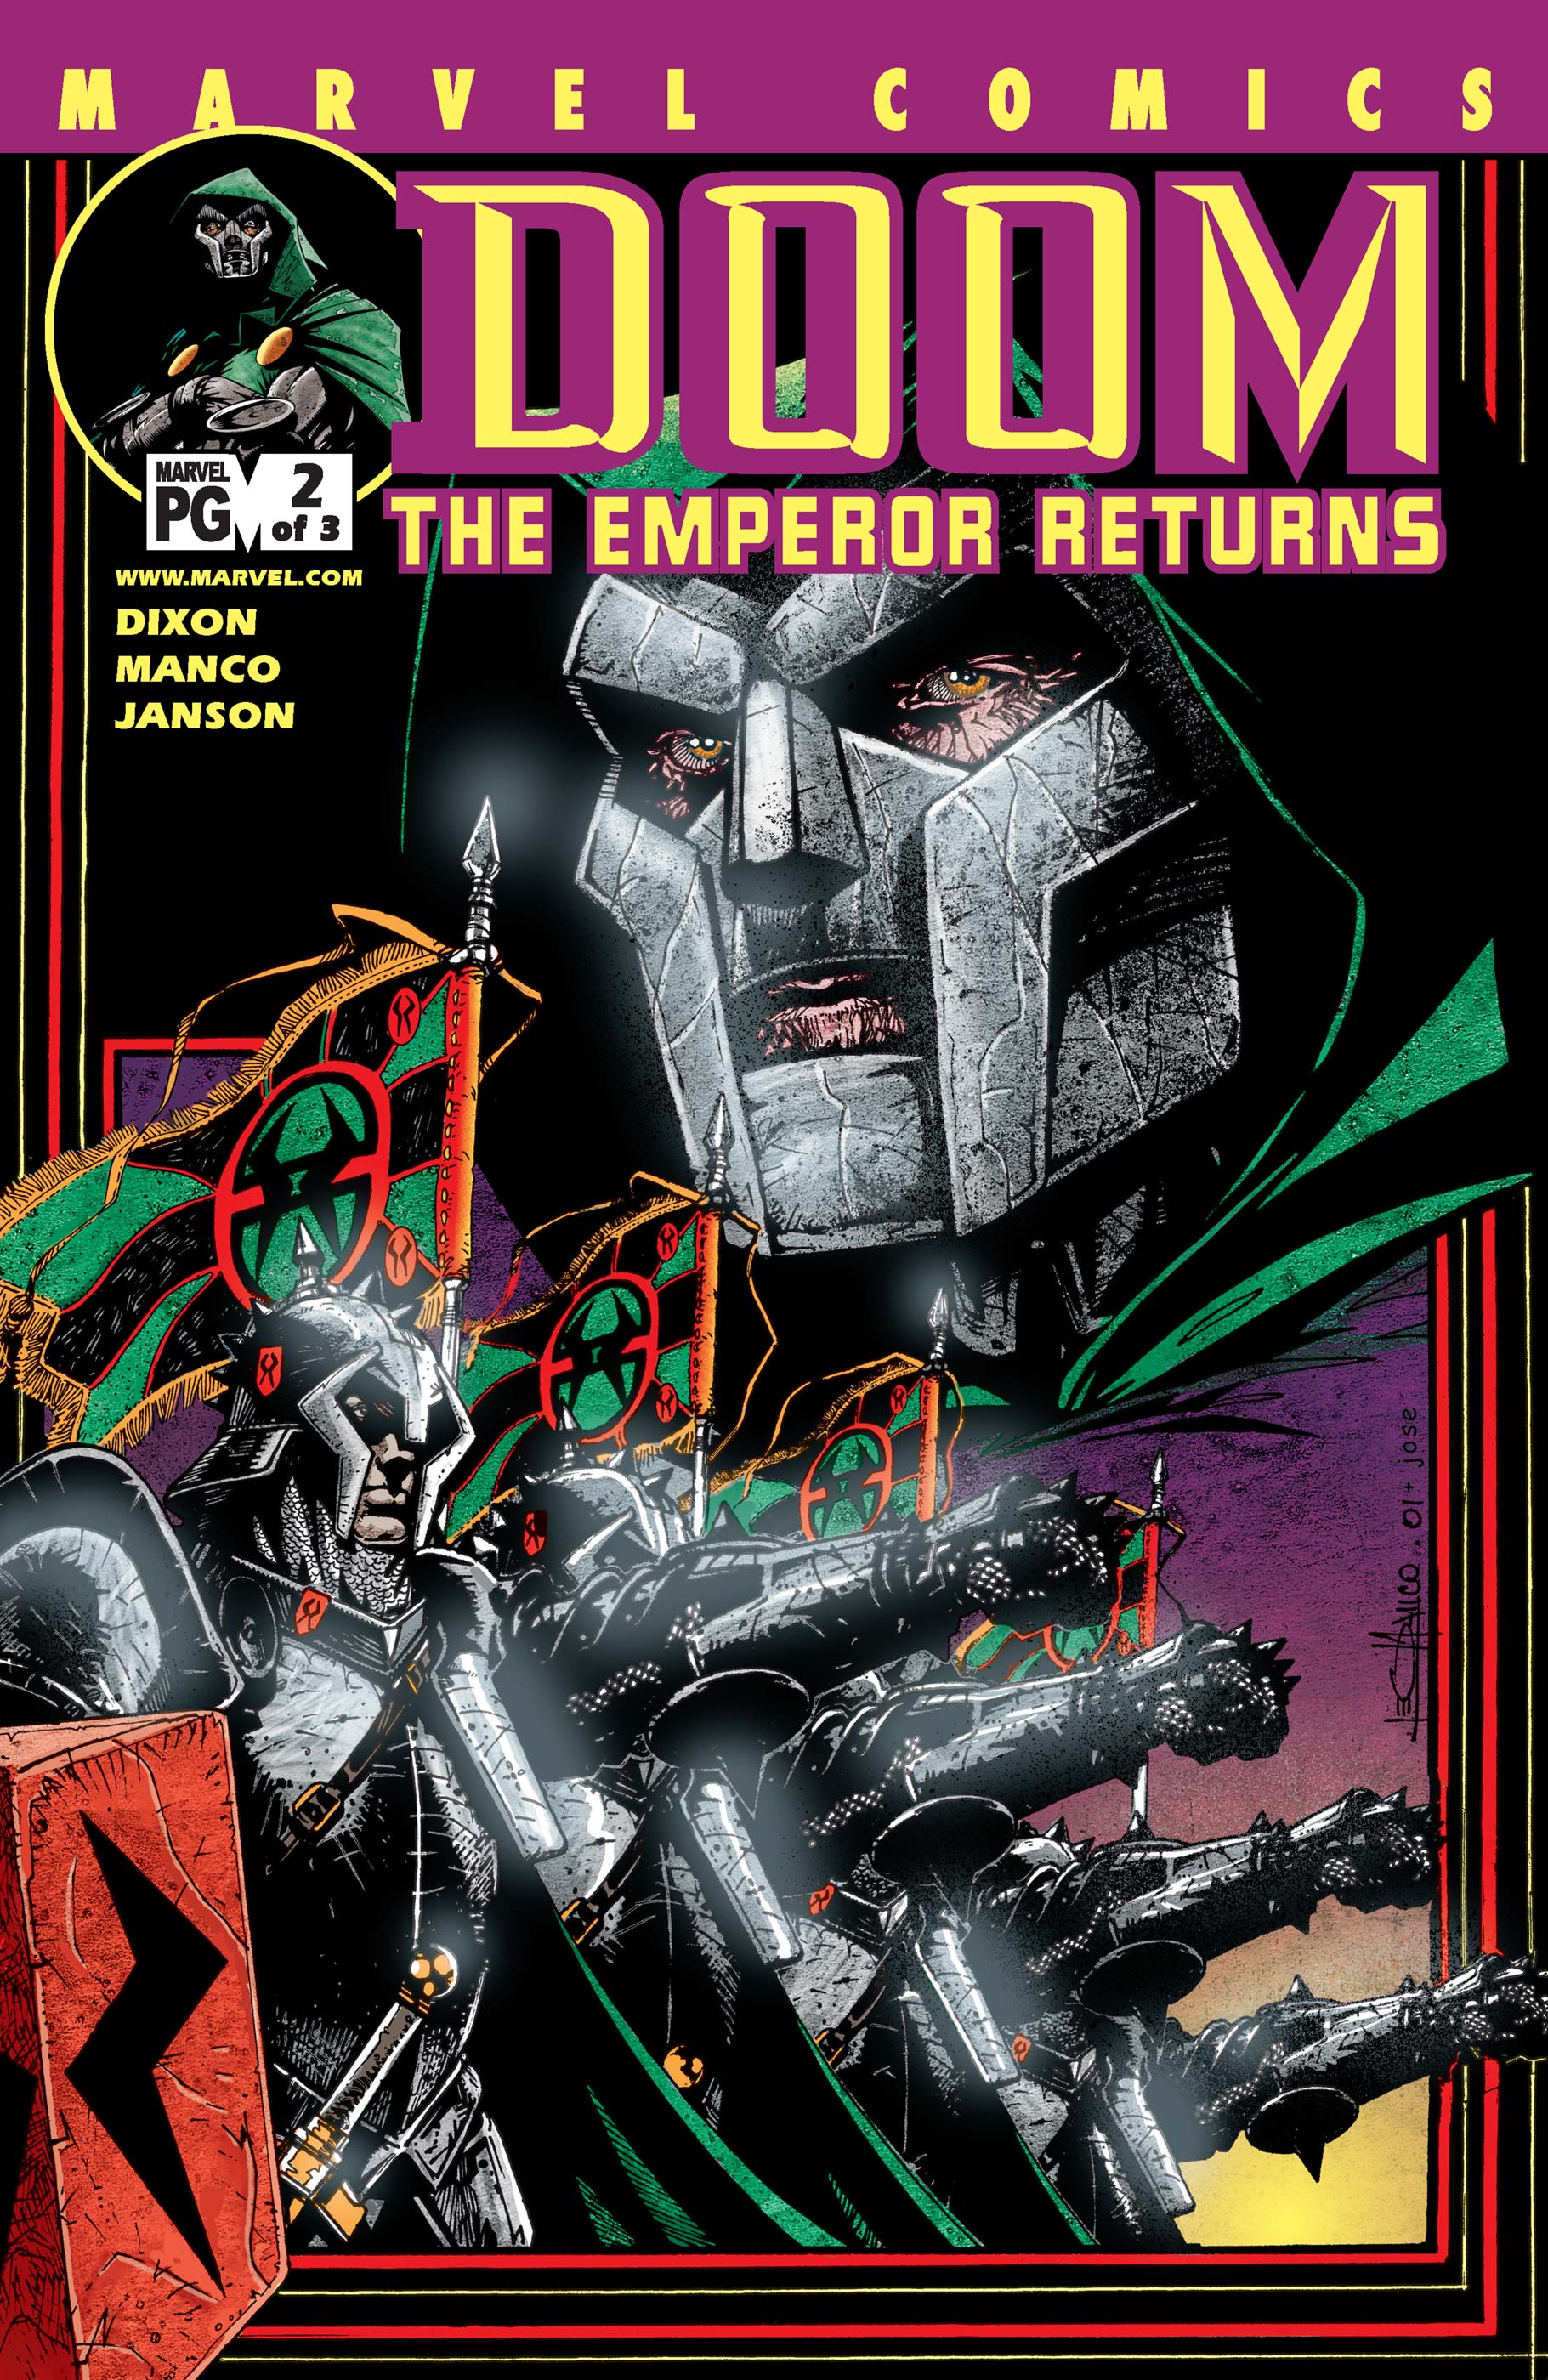 Doom: The Emperor Returns (2002) #2